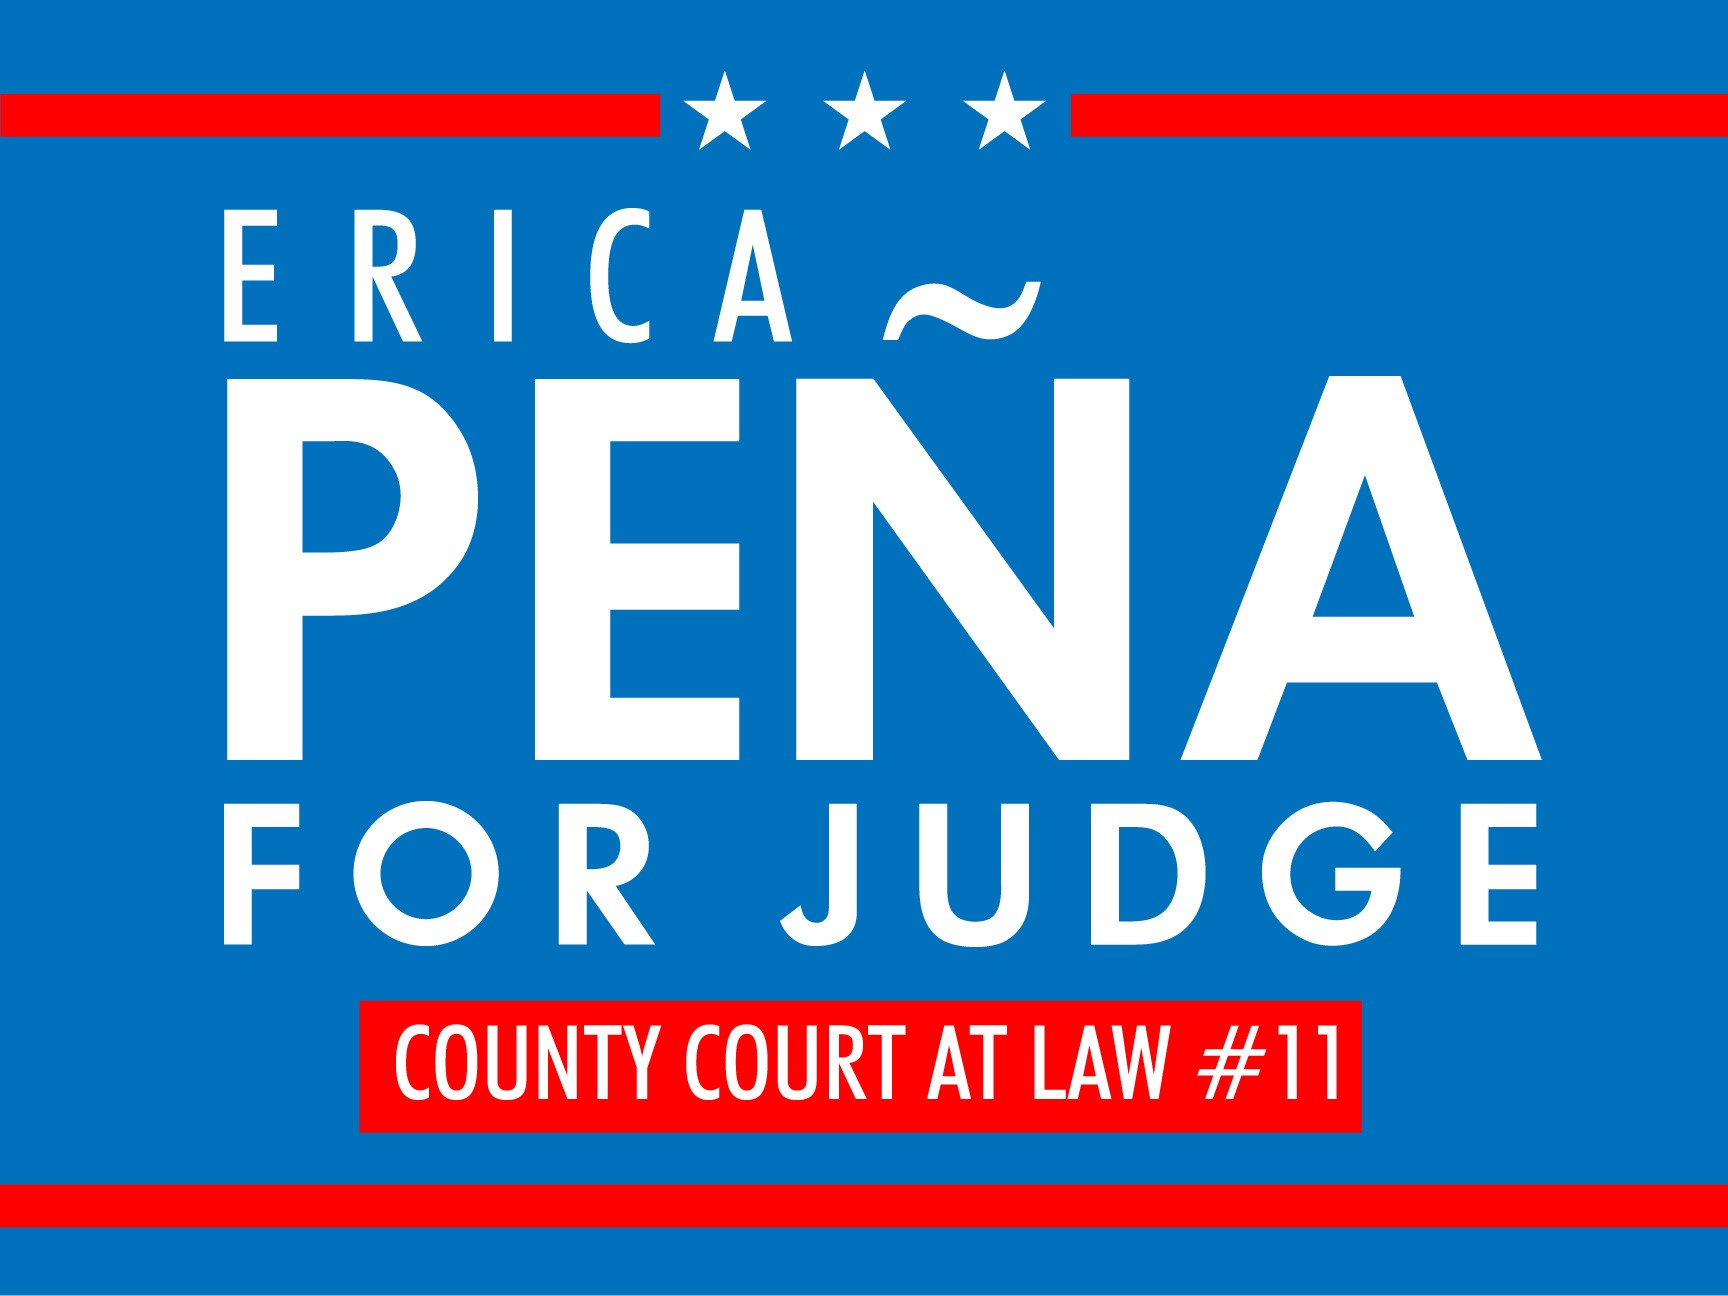 Erica Peña for Judge logo